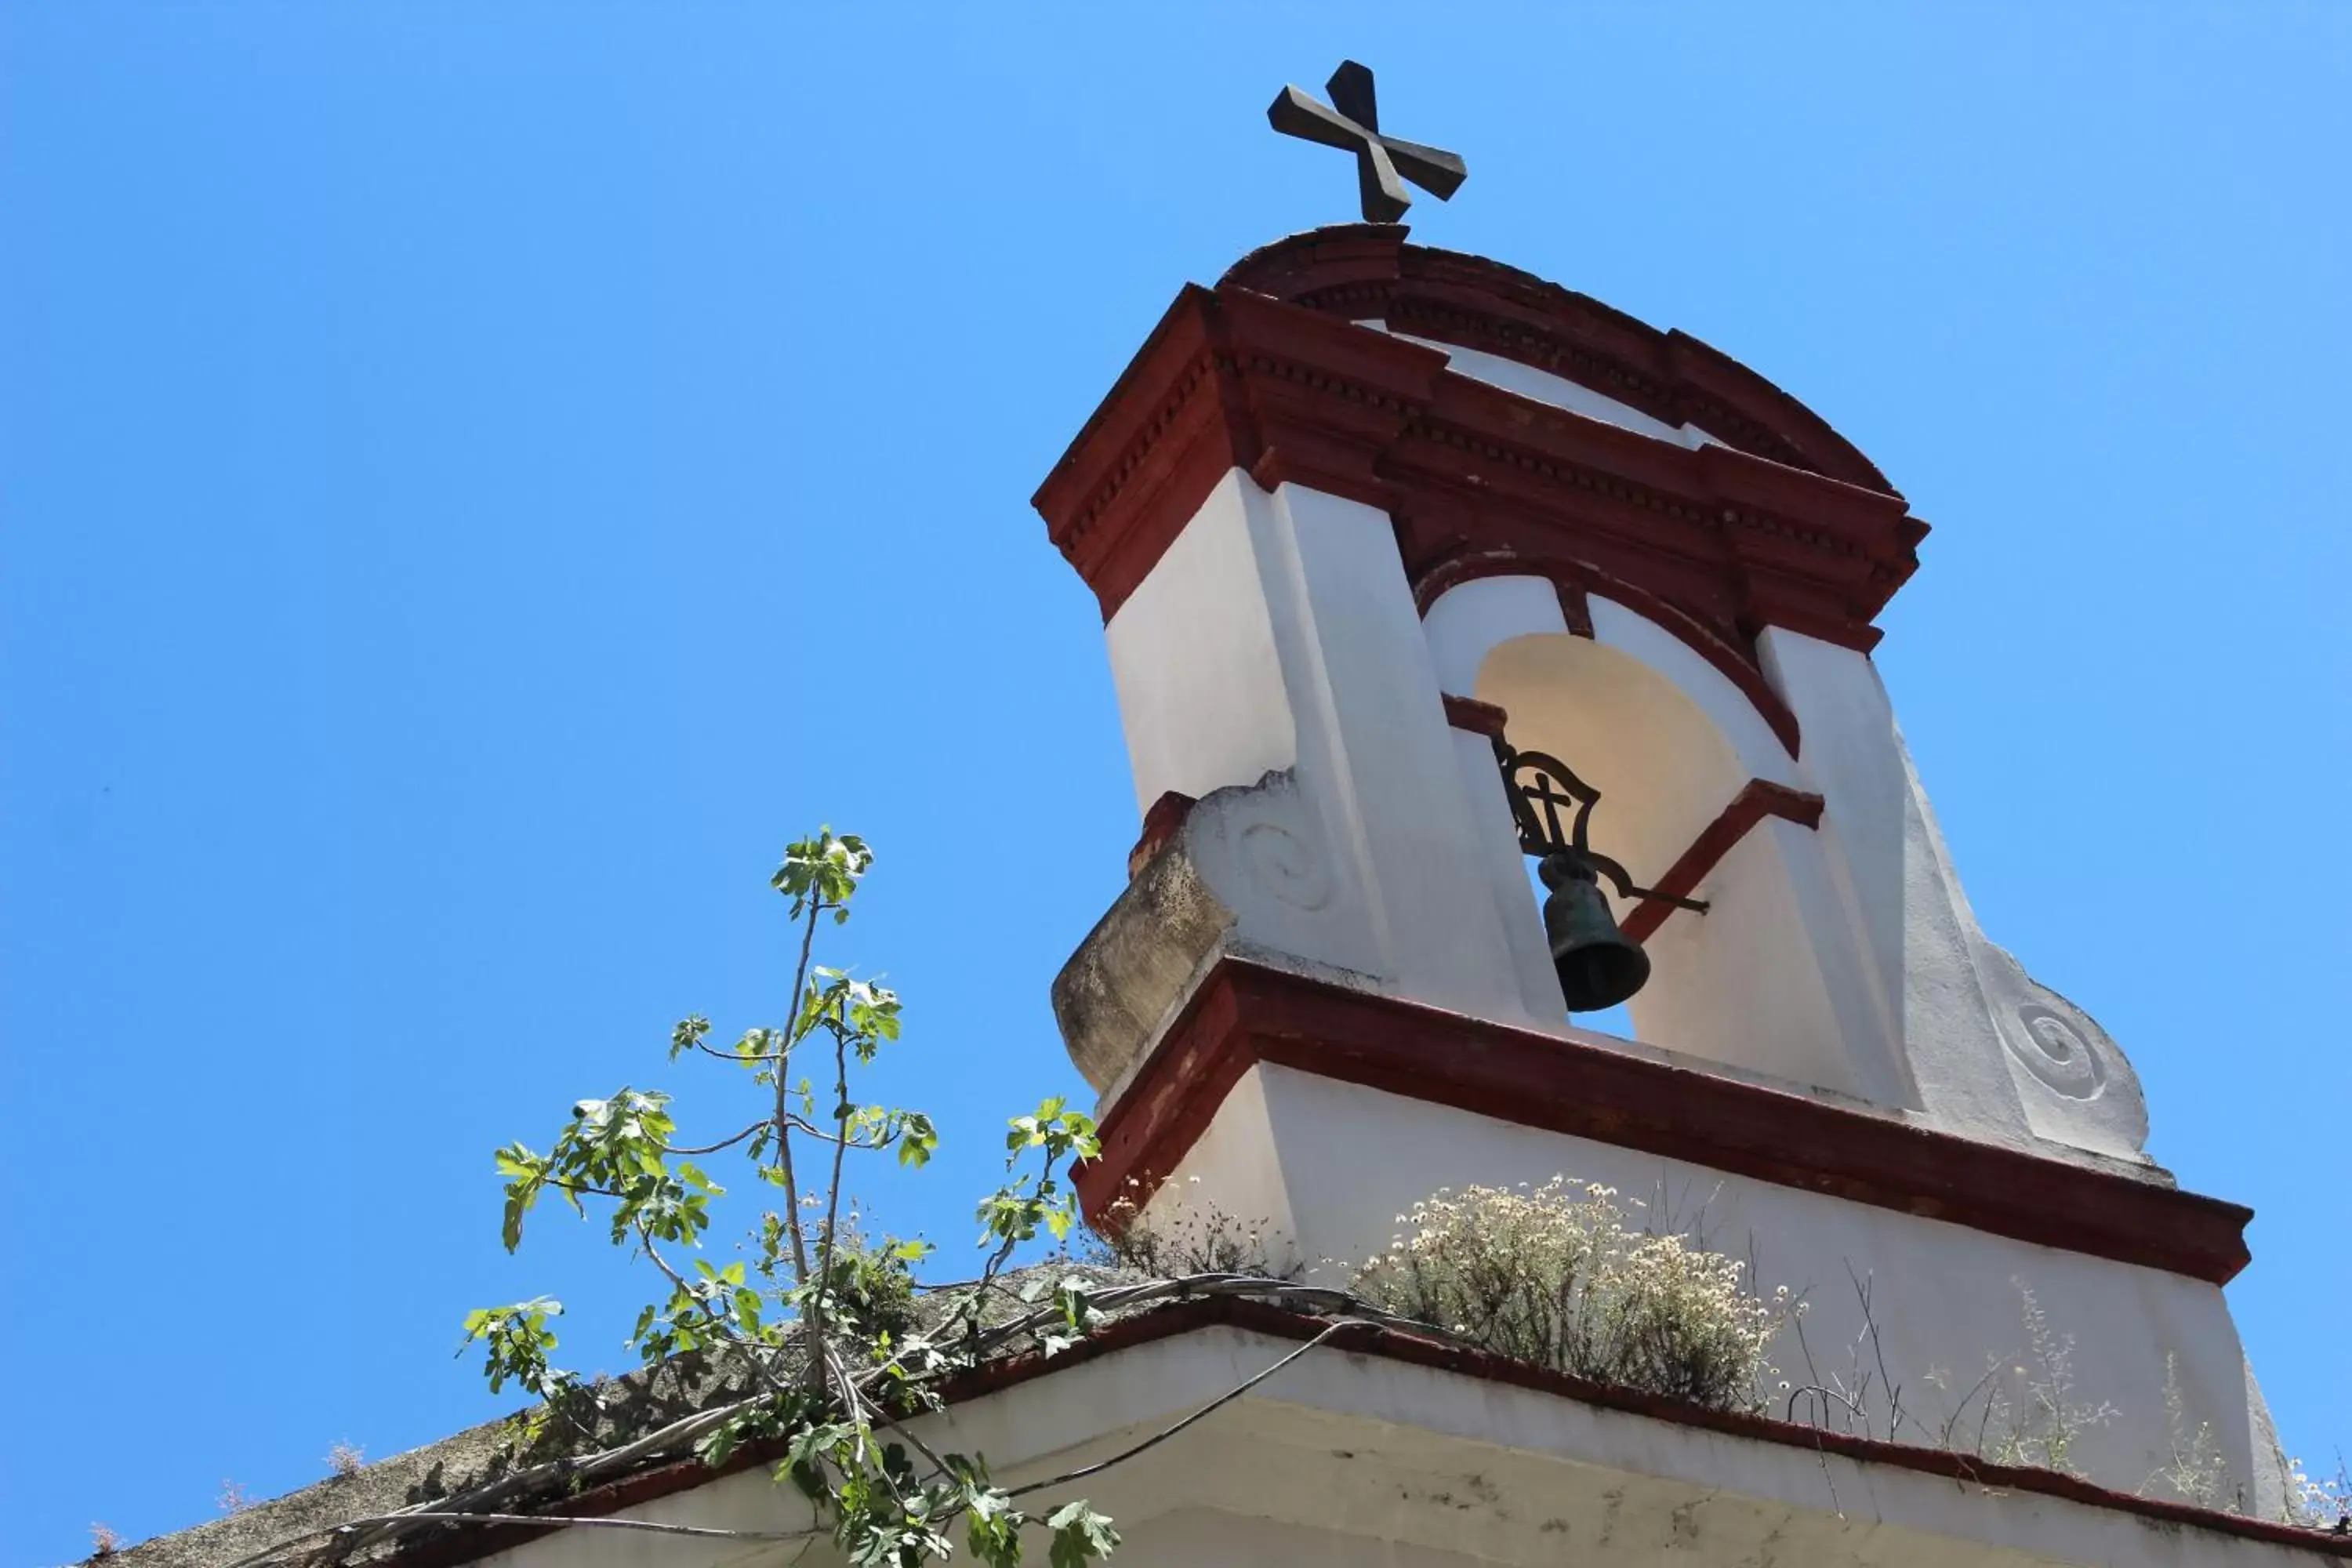 Nearby landmark, Facade/Entrance in Casa La Nuez